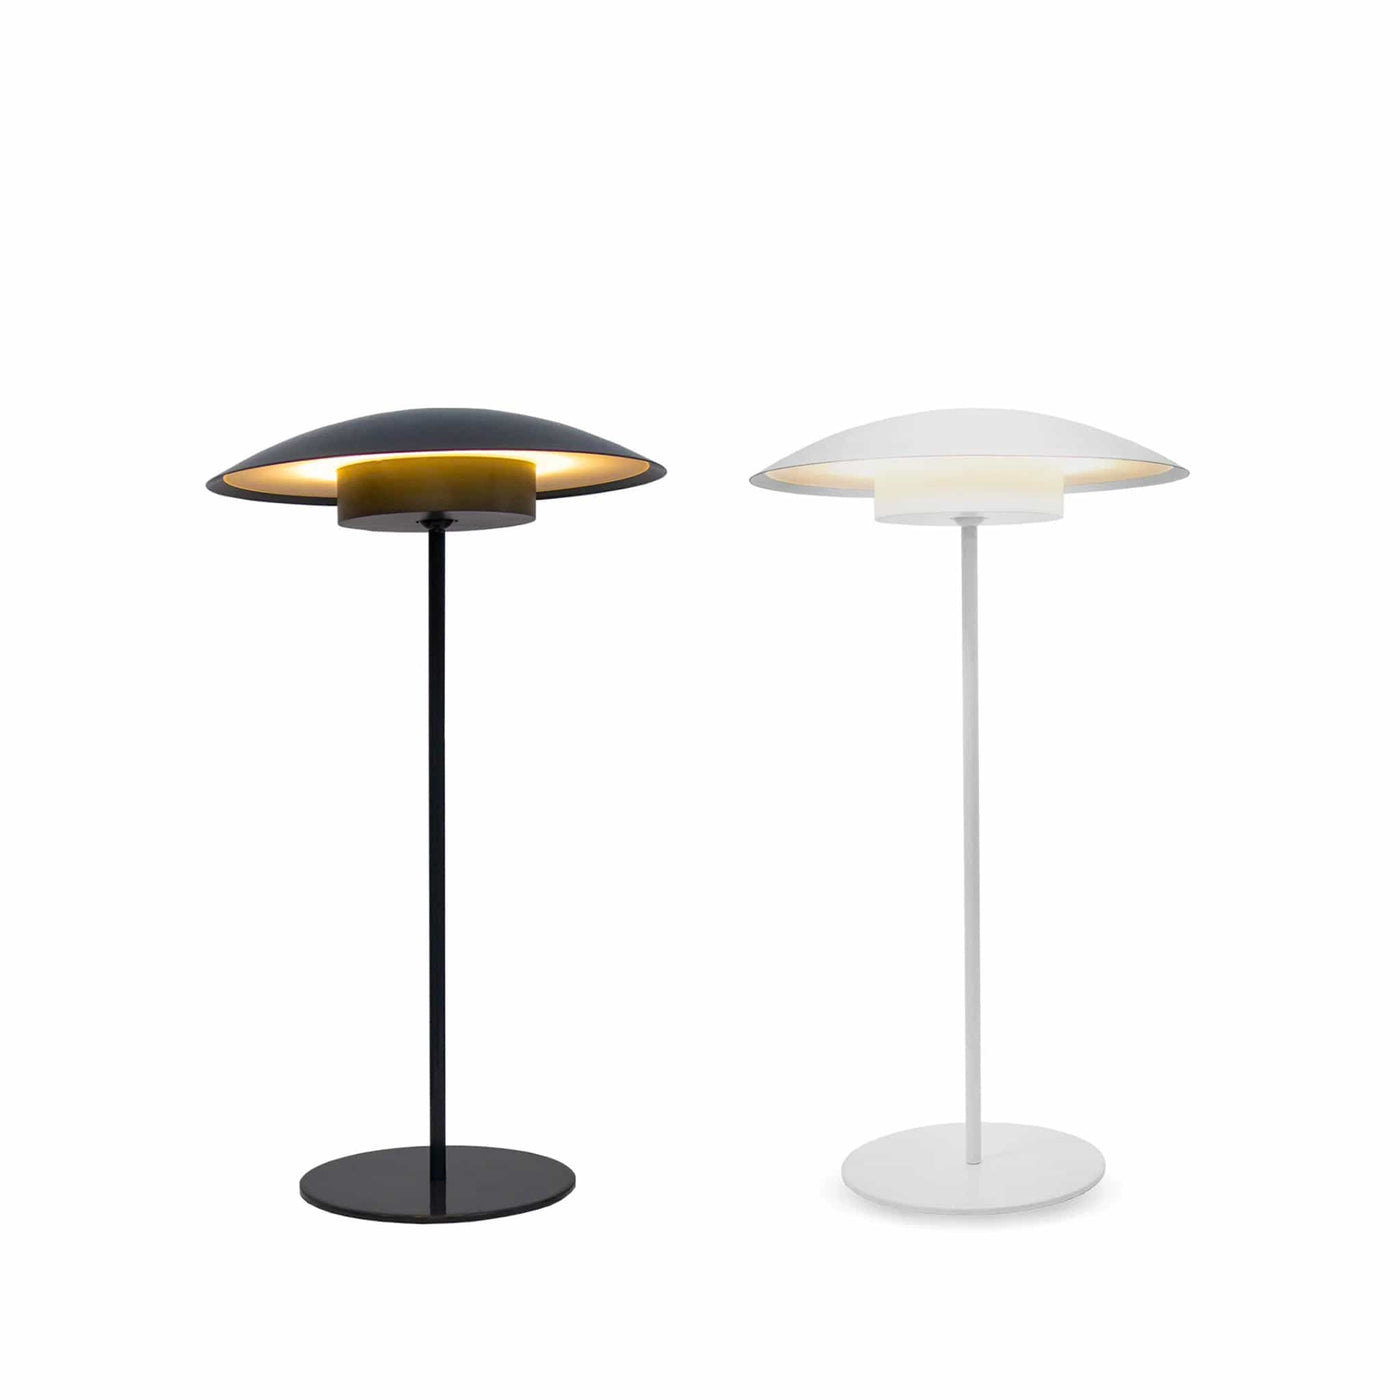 Éclairez votre espace avec la lampe de table Sardinia de Newgarden : design moderne, abat-jour réglable, et autonomie de batterie longue durée.